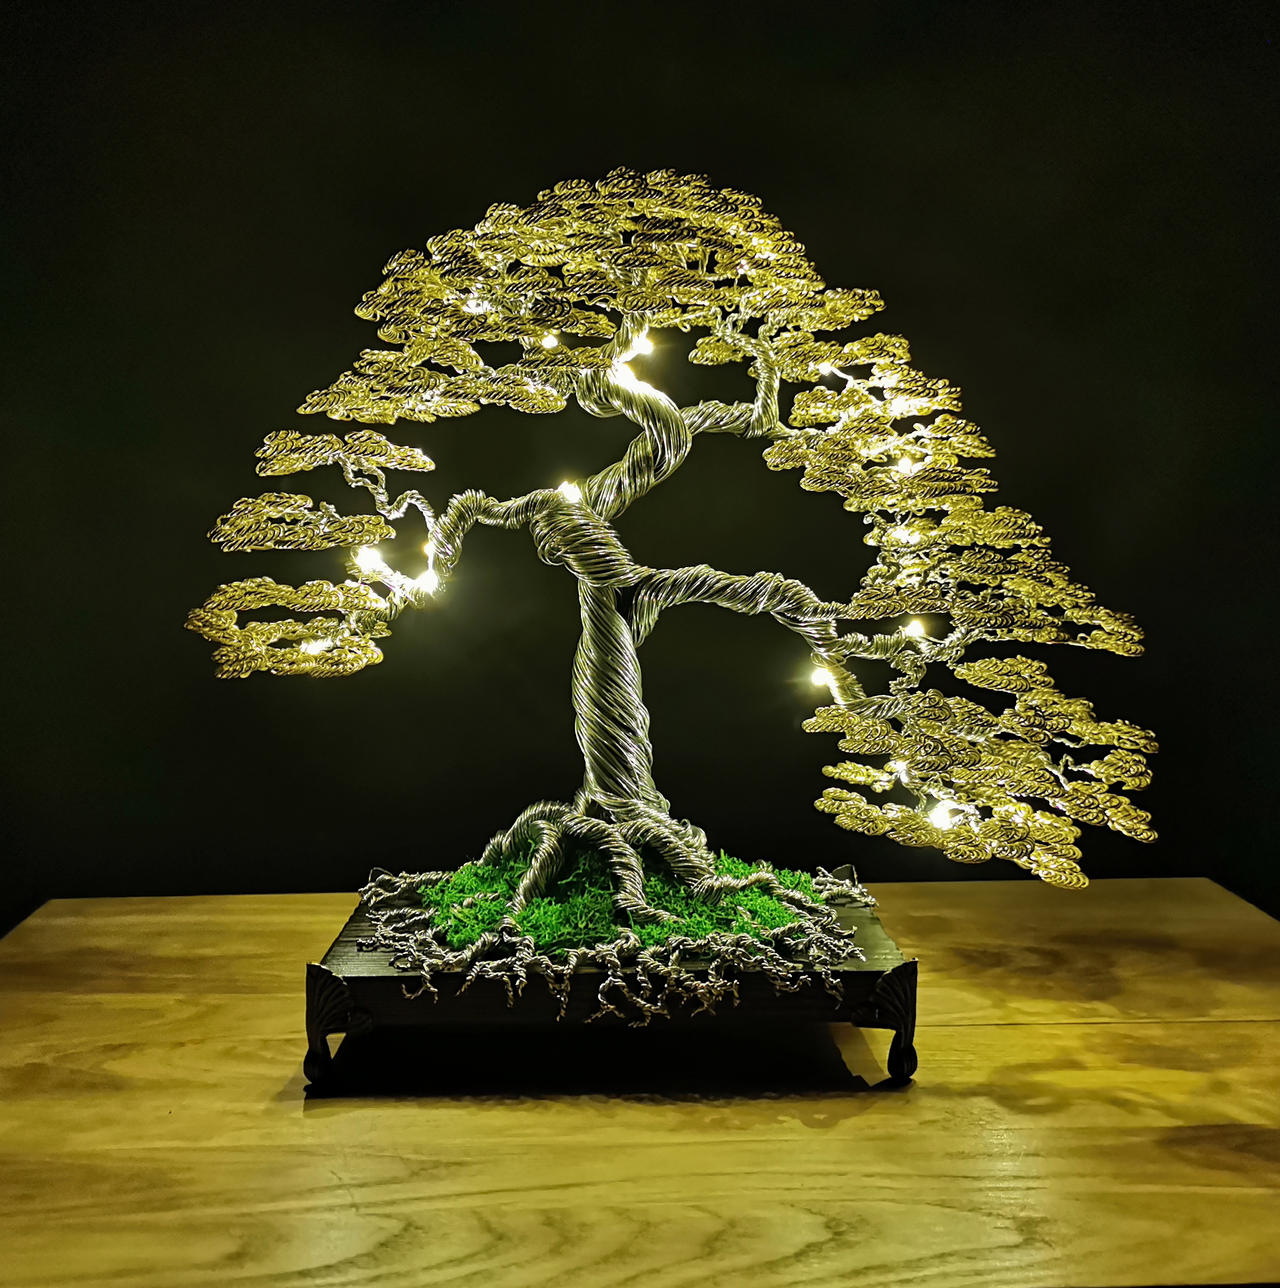 Golden bonsai wire tree by skorasz on DeviantArt